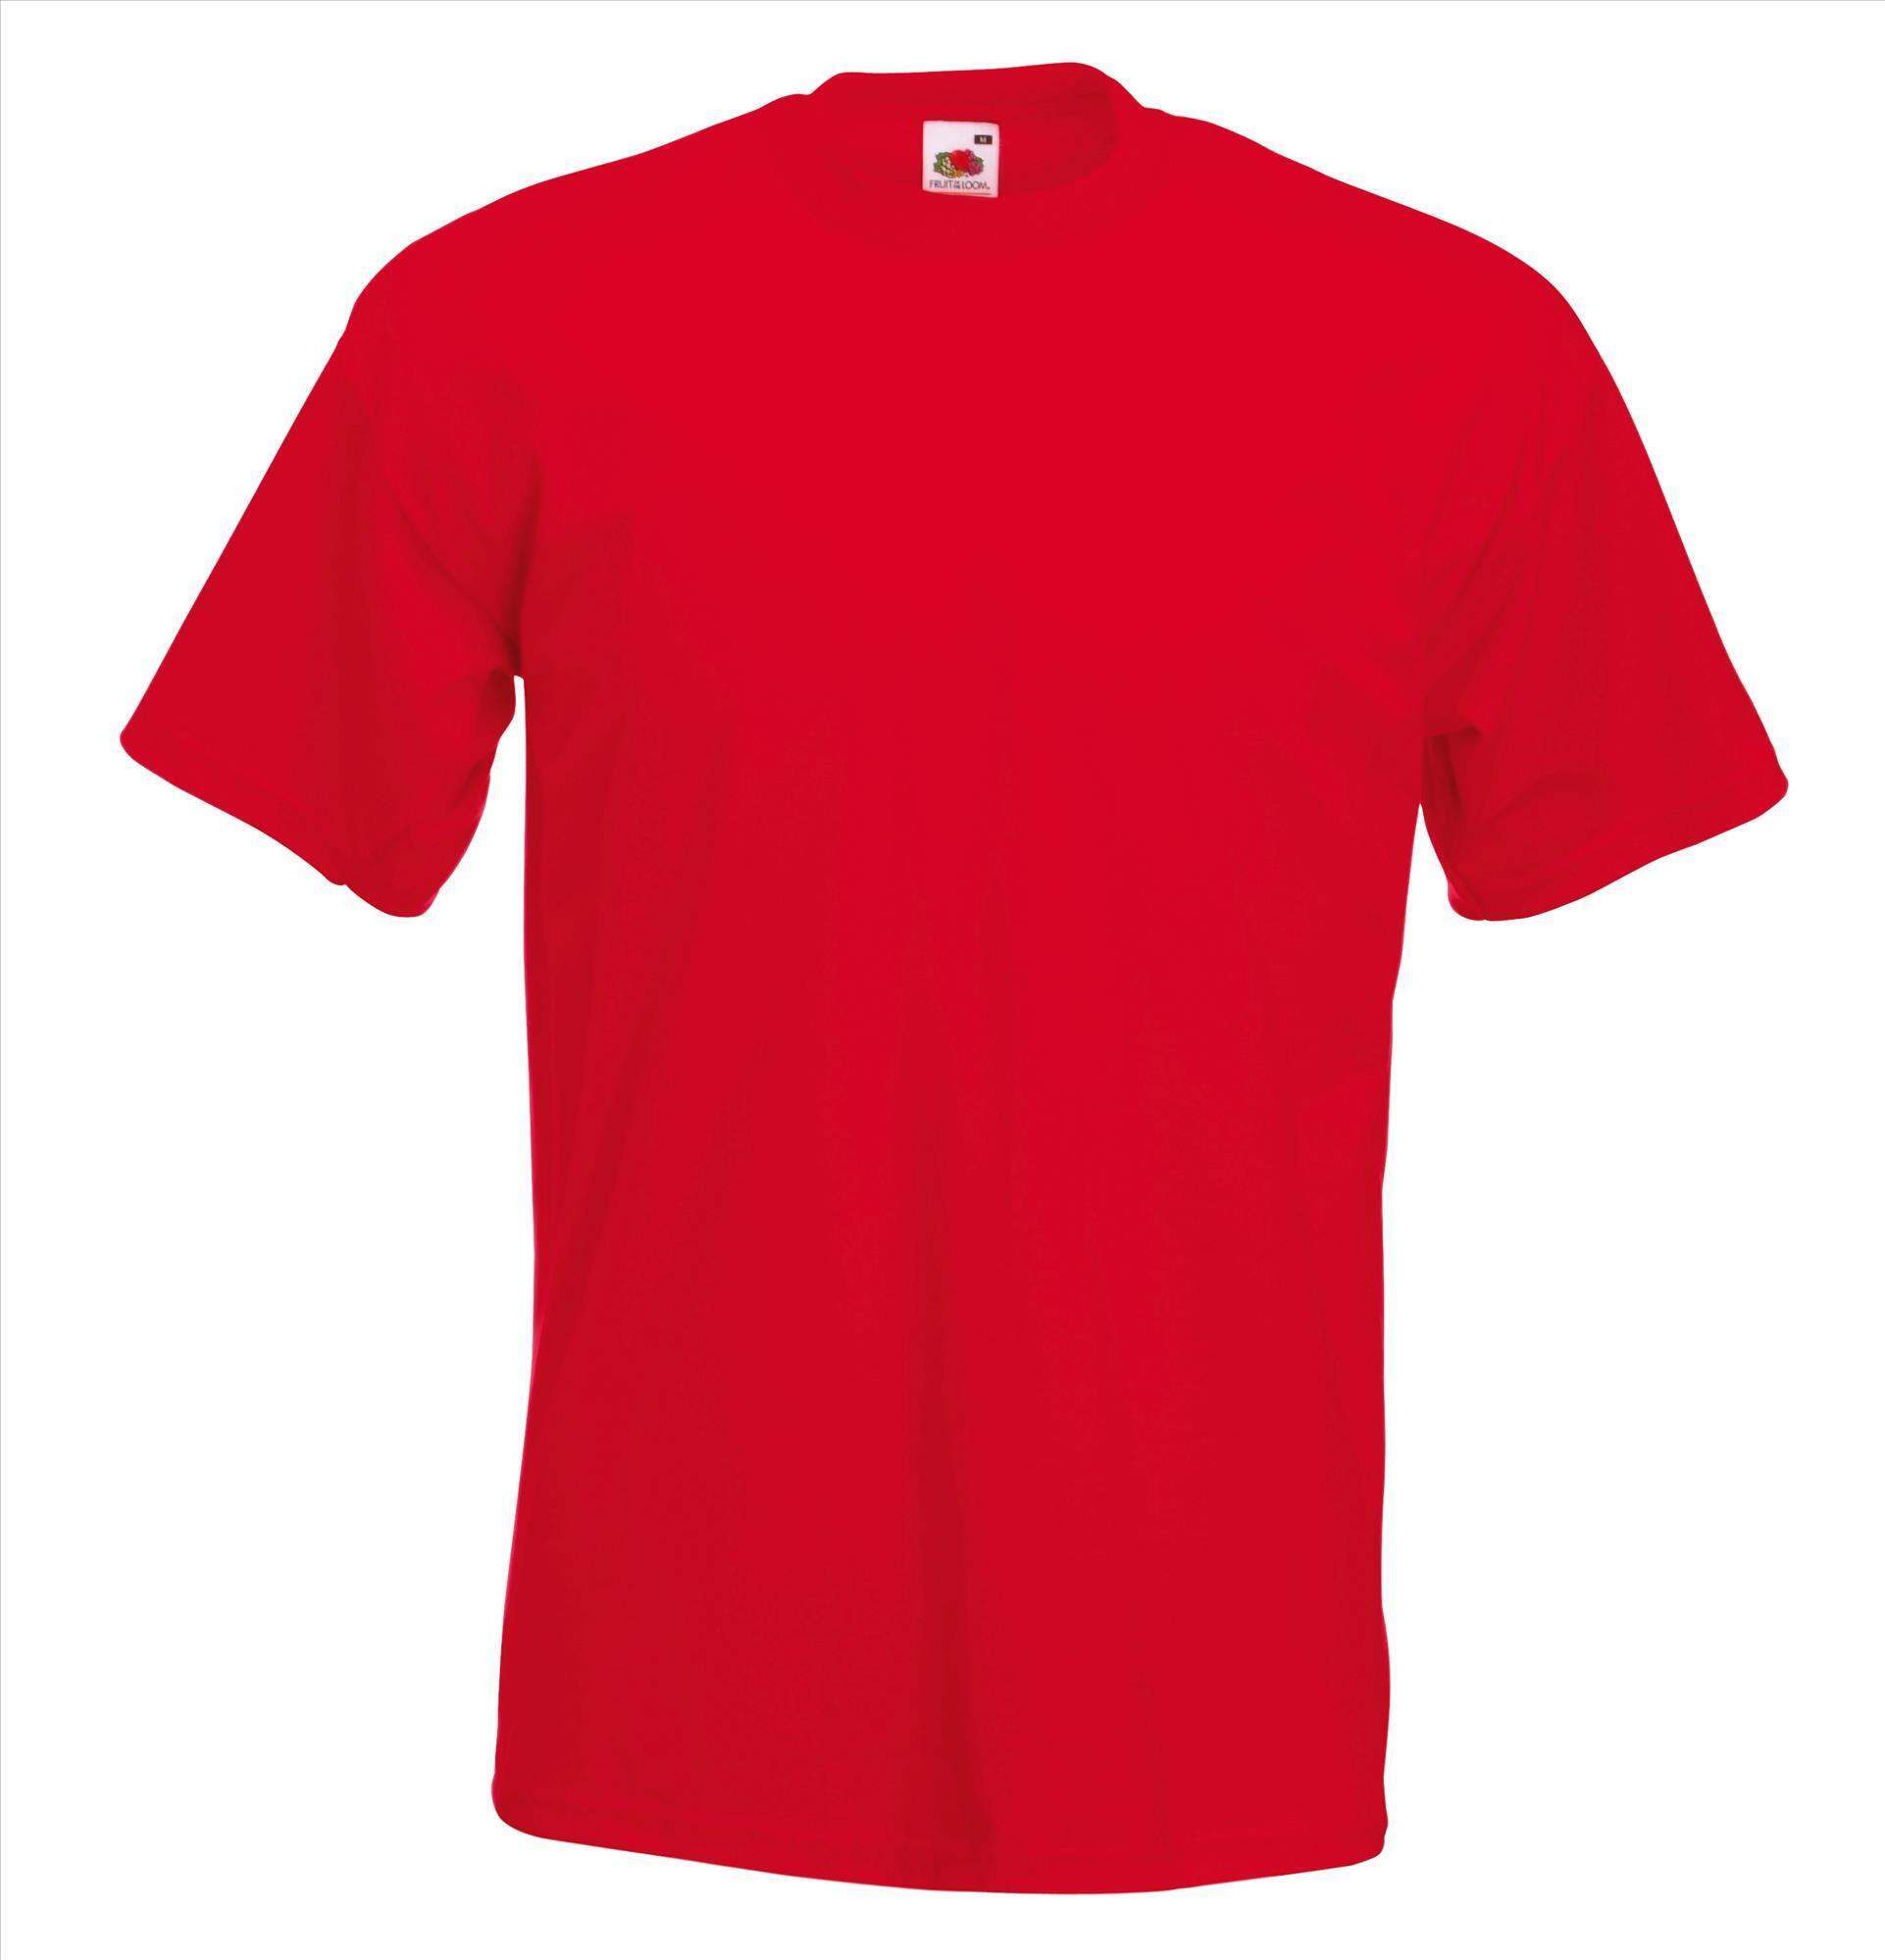 Dik gebreide T-shirt rood voor mannen ronde hals te personaliseren